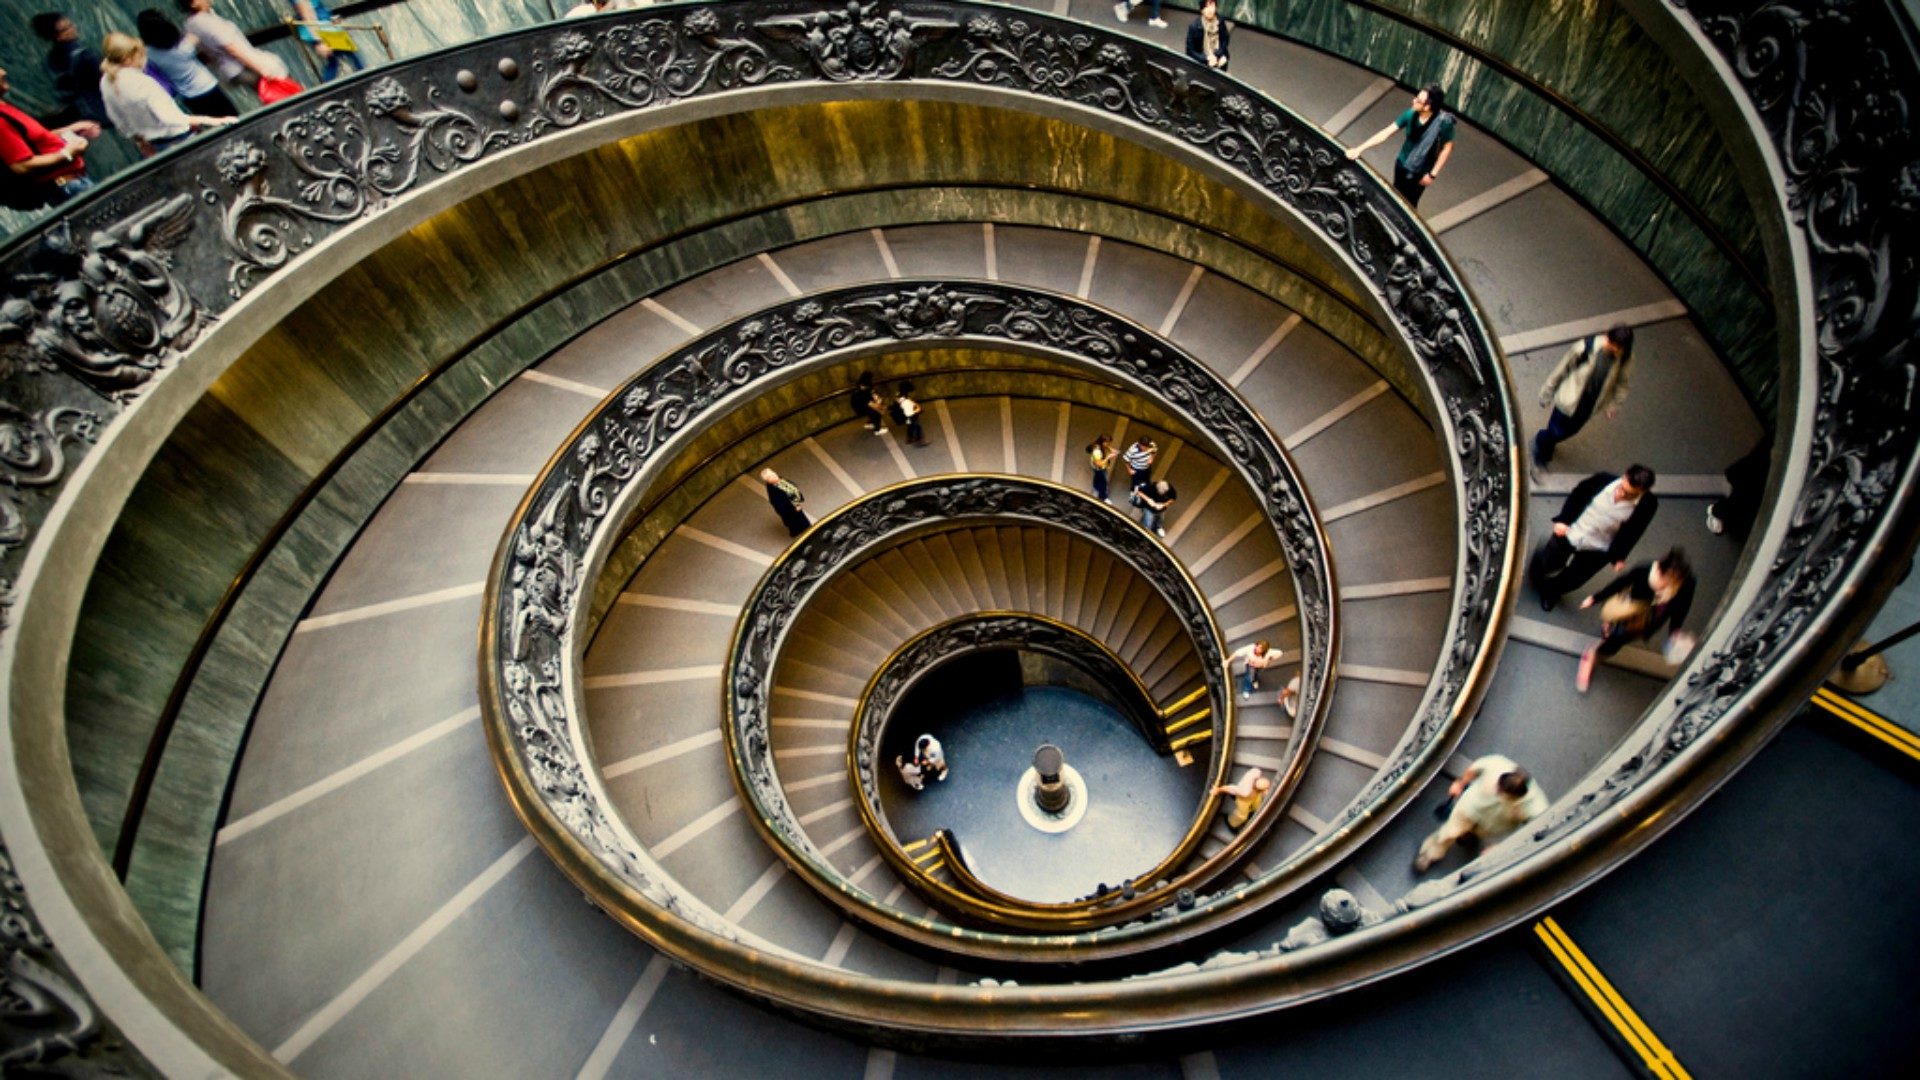 Le public pourra visiter dès l'aube les Musées du Vatican | © Vicente Villamon/Flickr/CC BY-SA 2.0